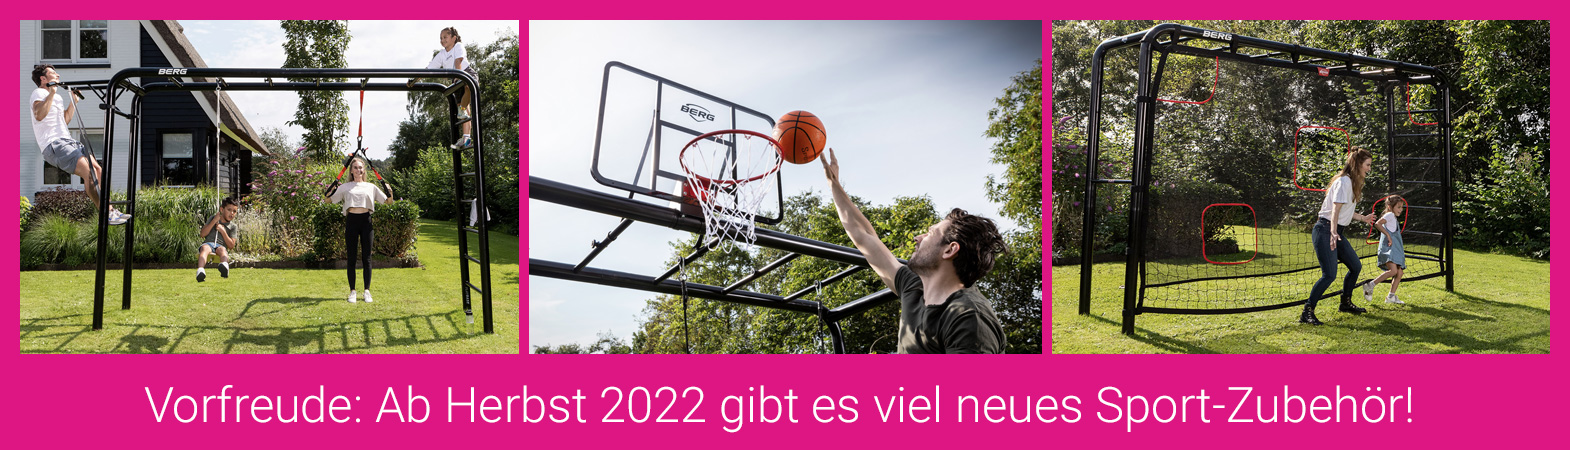 Zubehör-Neuheiten im Herbst 2022: Der Fokus liegt auf Sport und Fitness mit einer Torwand, Fitnessbändern, einem Basketballkorb und einer Klimmzugstange.